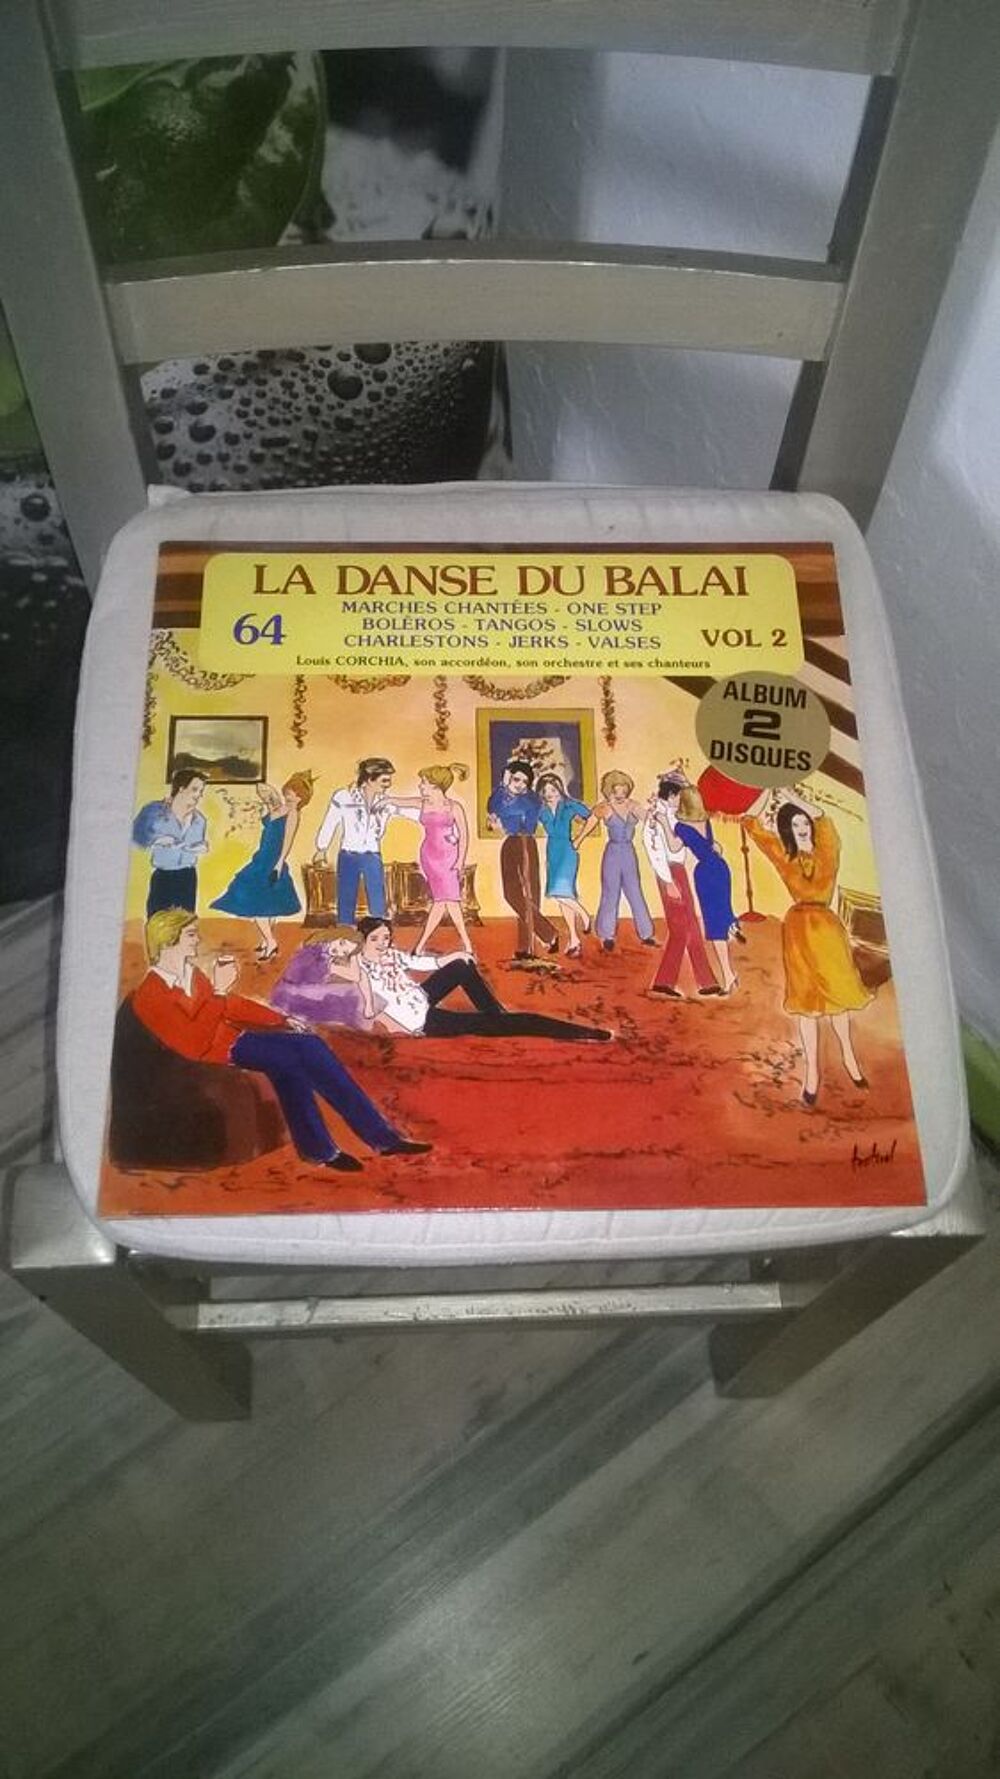 Vinyle Louis Corchia Et Son Orchestre
La Danse Du Balai Vol CD et vinyles